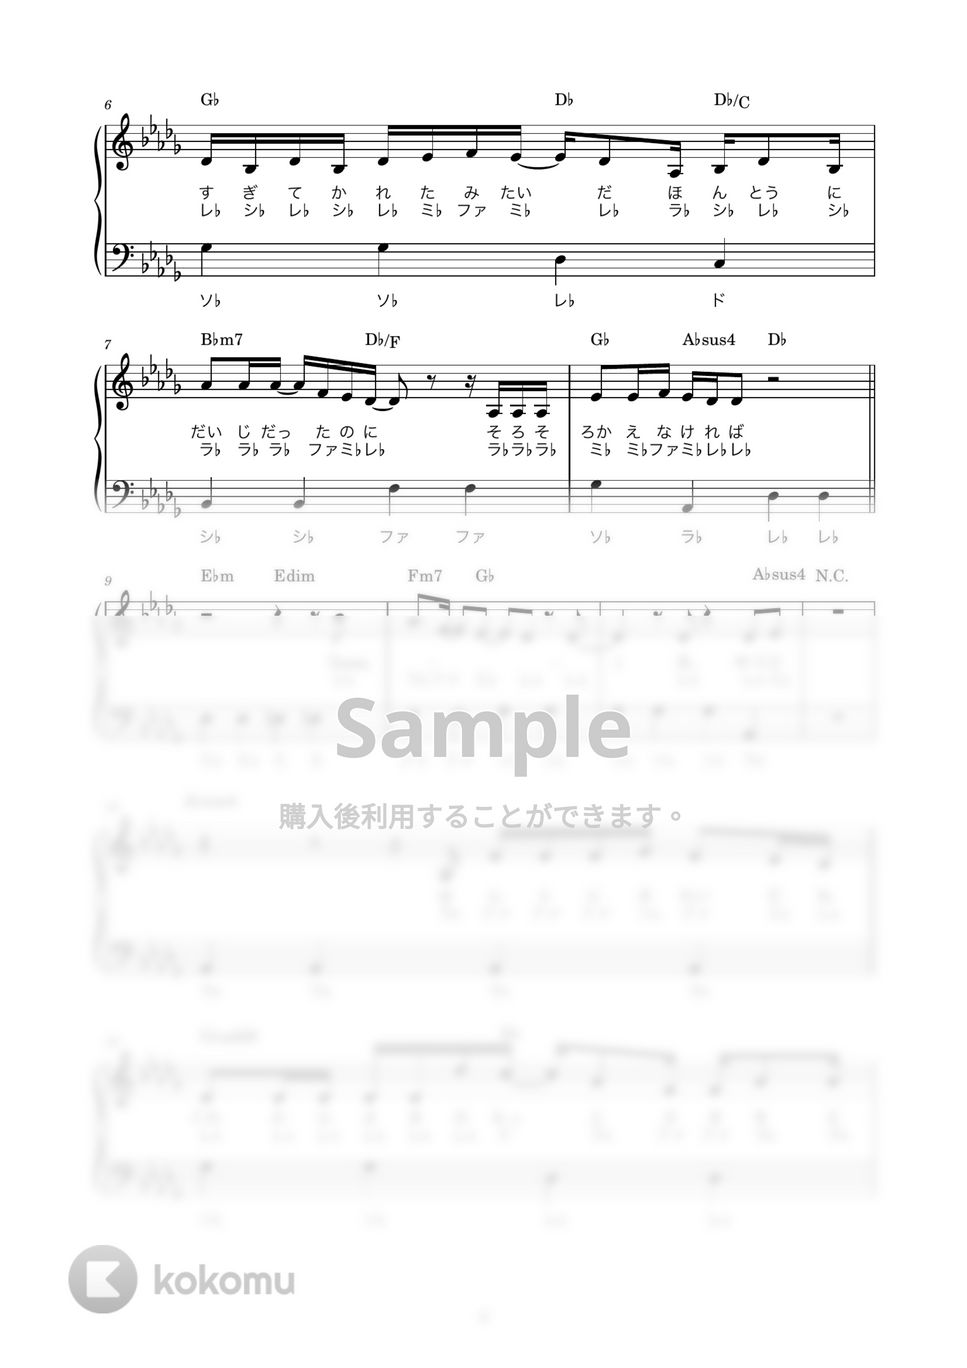 ヨルシカ - チノカテ (ピアノ楽譜 / かんたん両手 / 歌詞付き / ドレミ付き / 初心者向き) by piano.tokyo